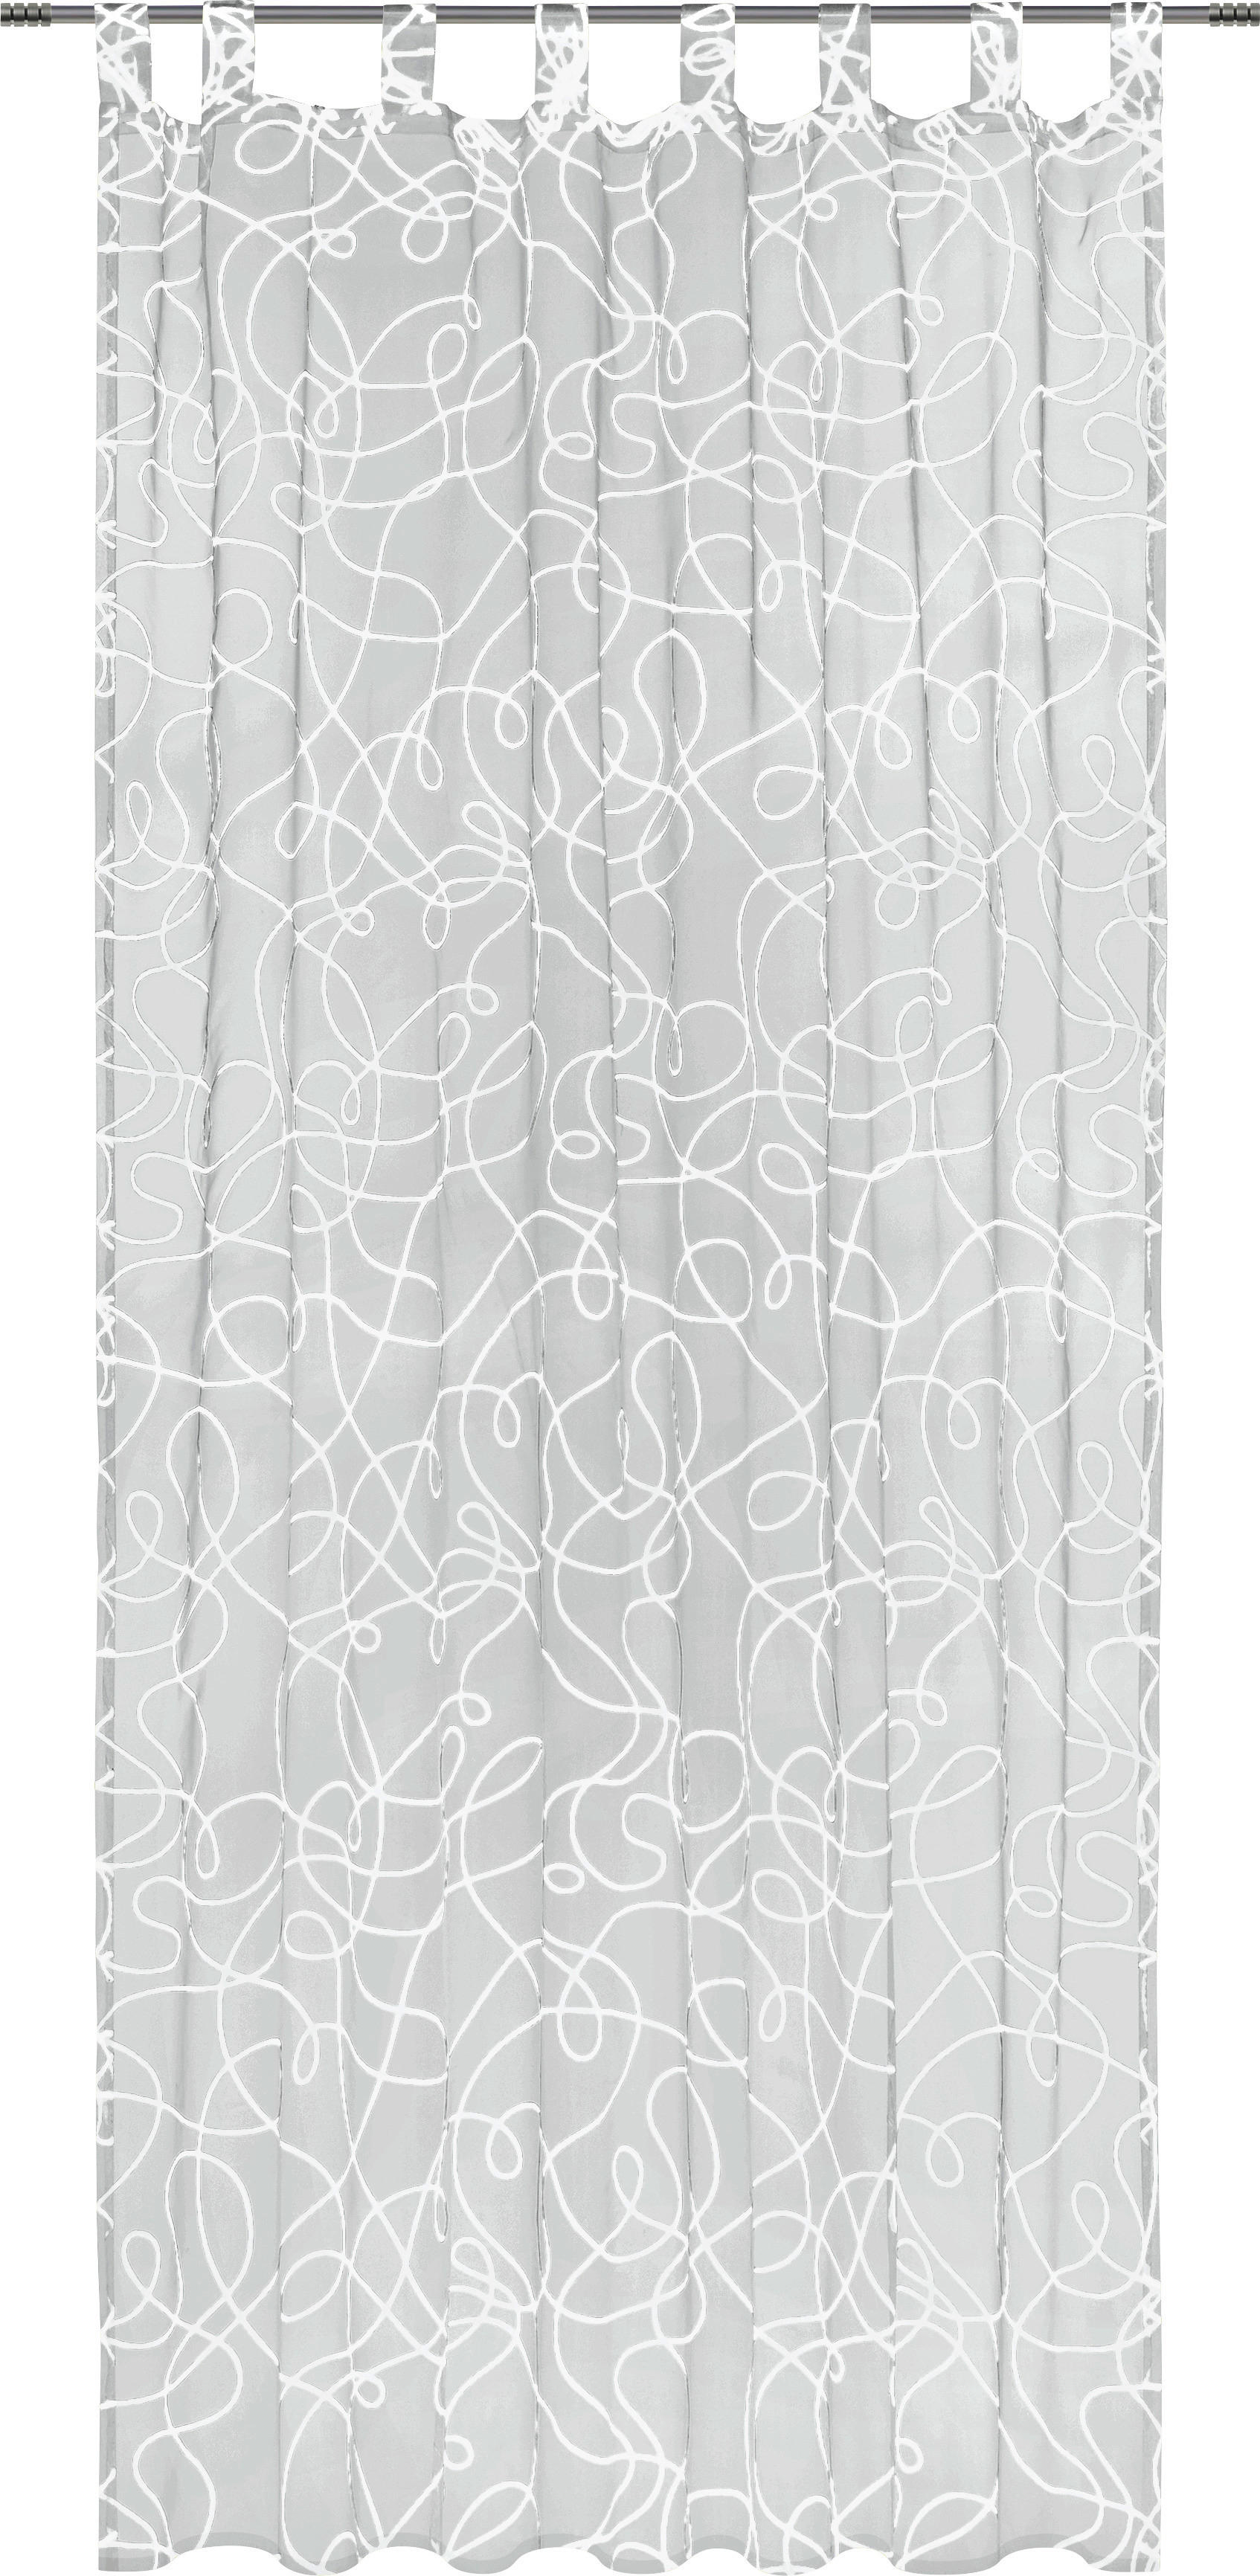 FÜLES FÜGGÖNY Áttetsző  - Fehér, Konventionell, Textil (140/245cm) - Boxxx